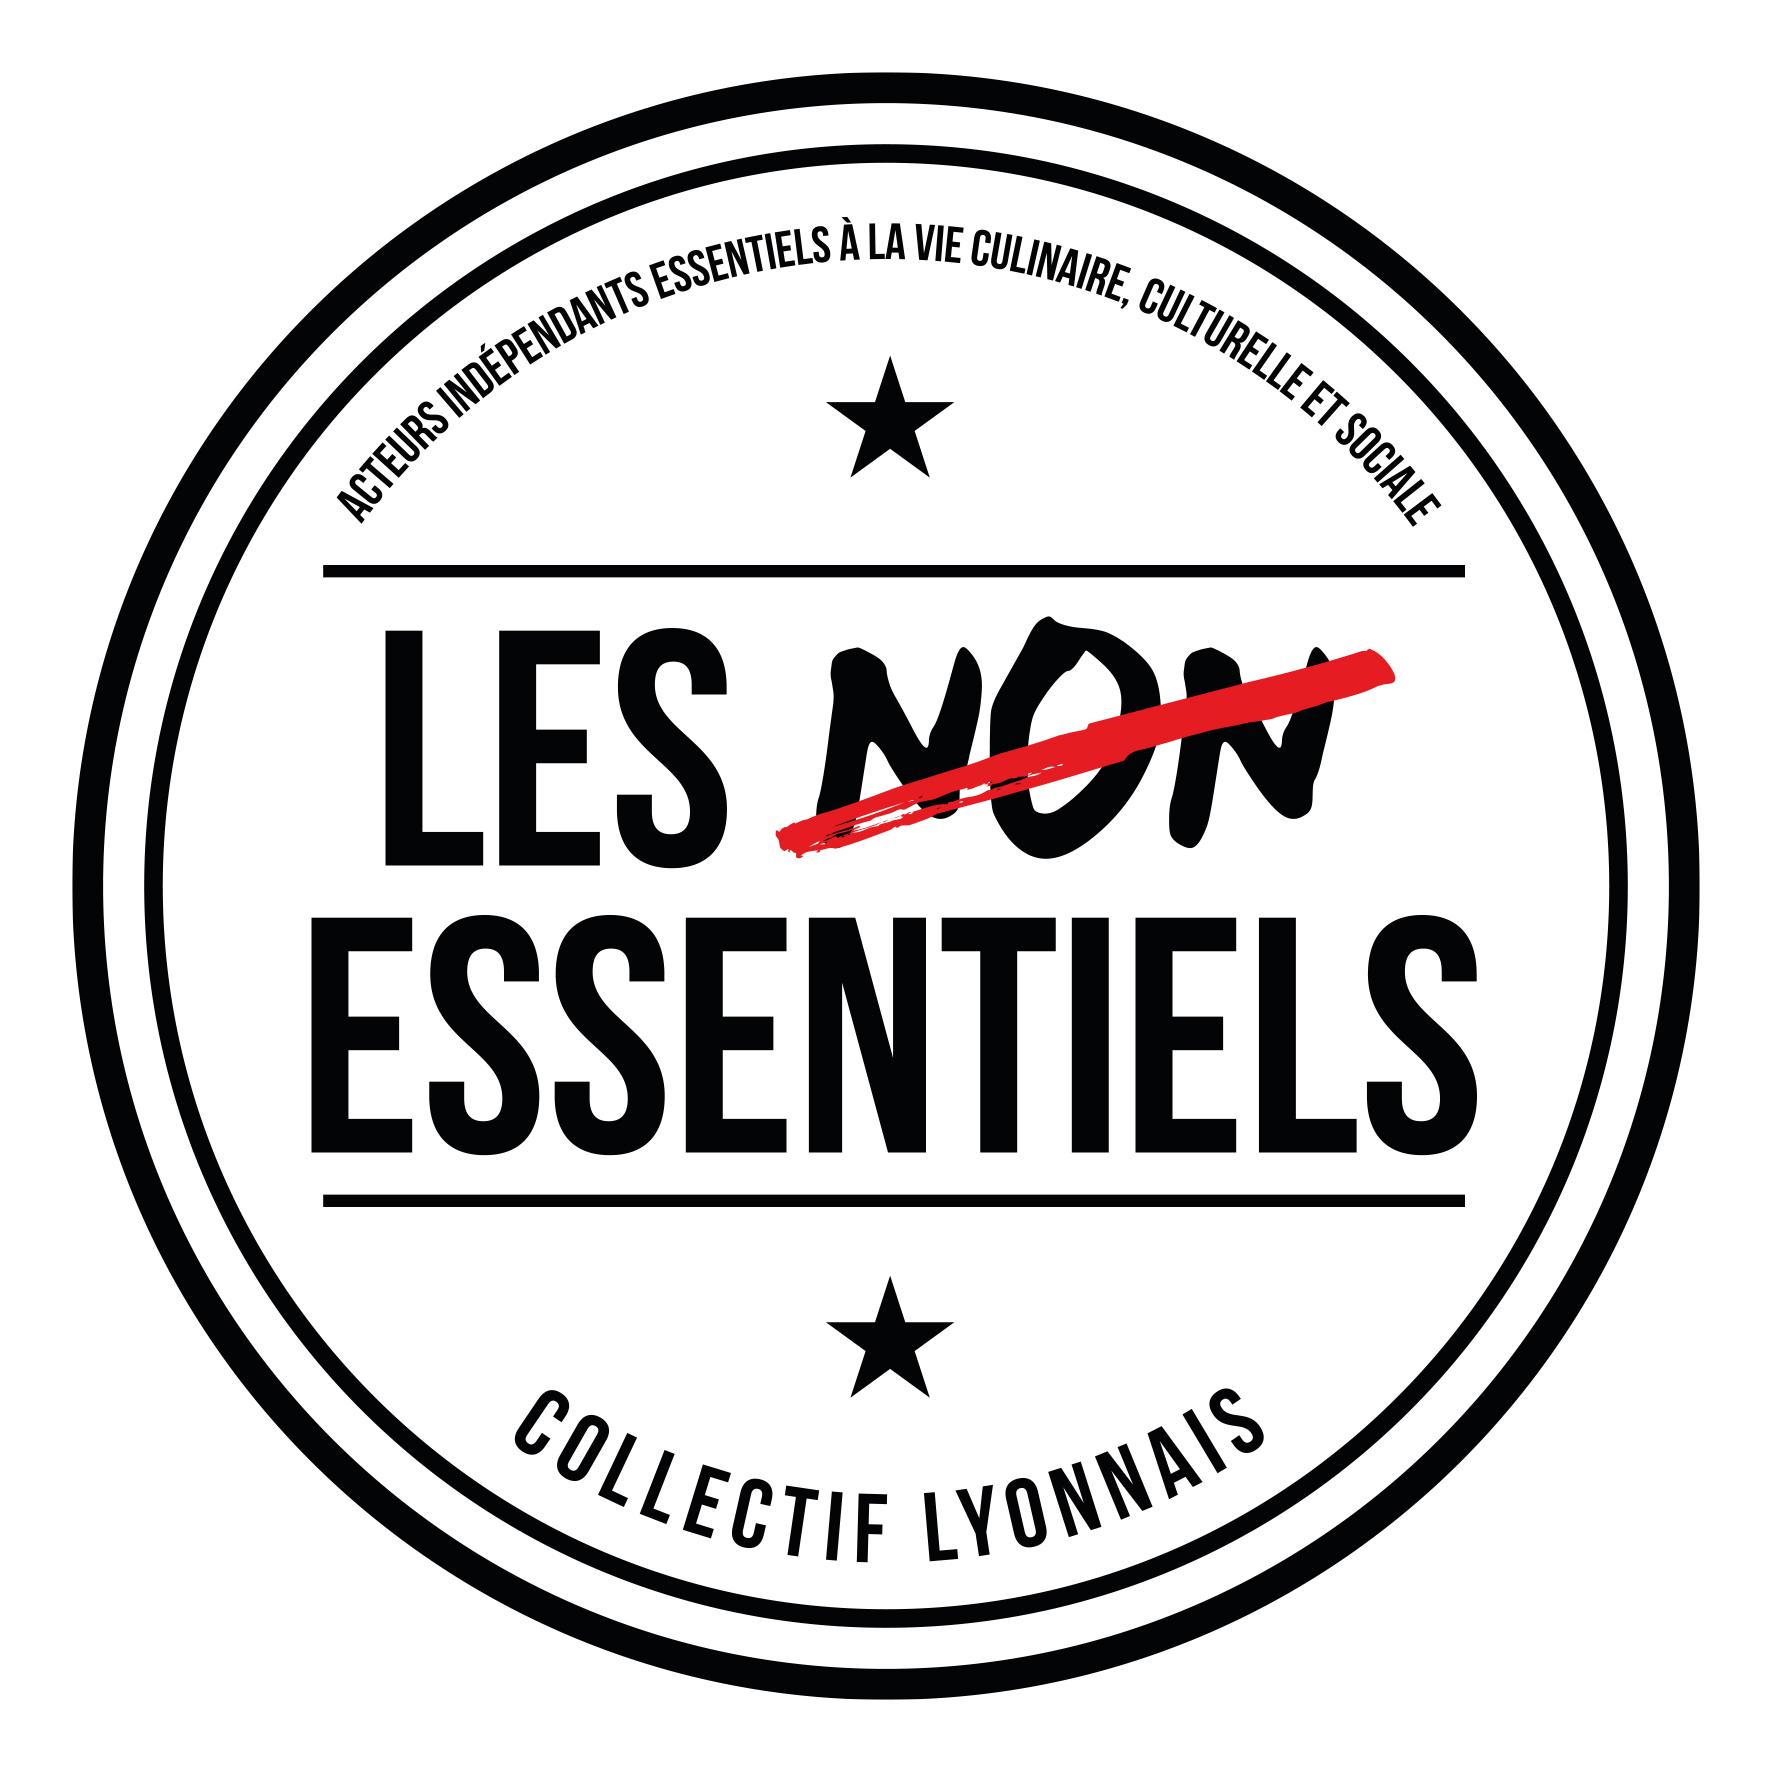 Collectif Les Essentiels : « Le but est de se réunir pour se faire entendre et mener des actions communes »